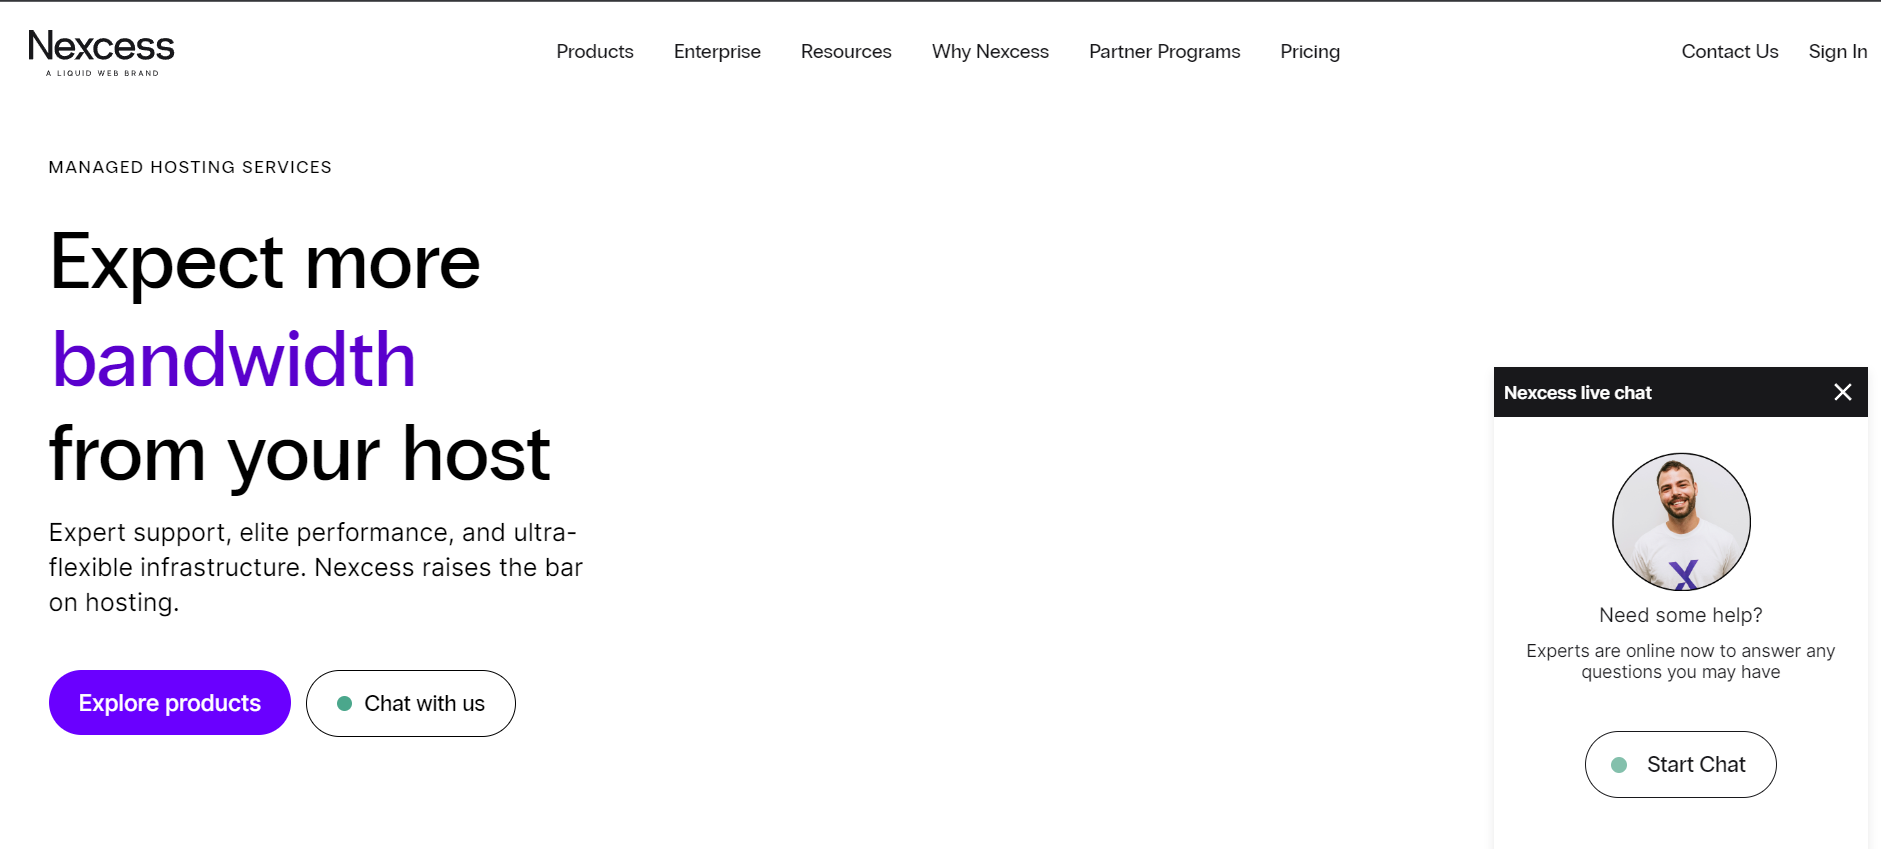 Nexcess homepage screenshot